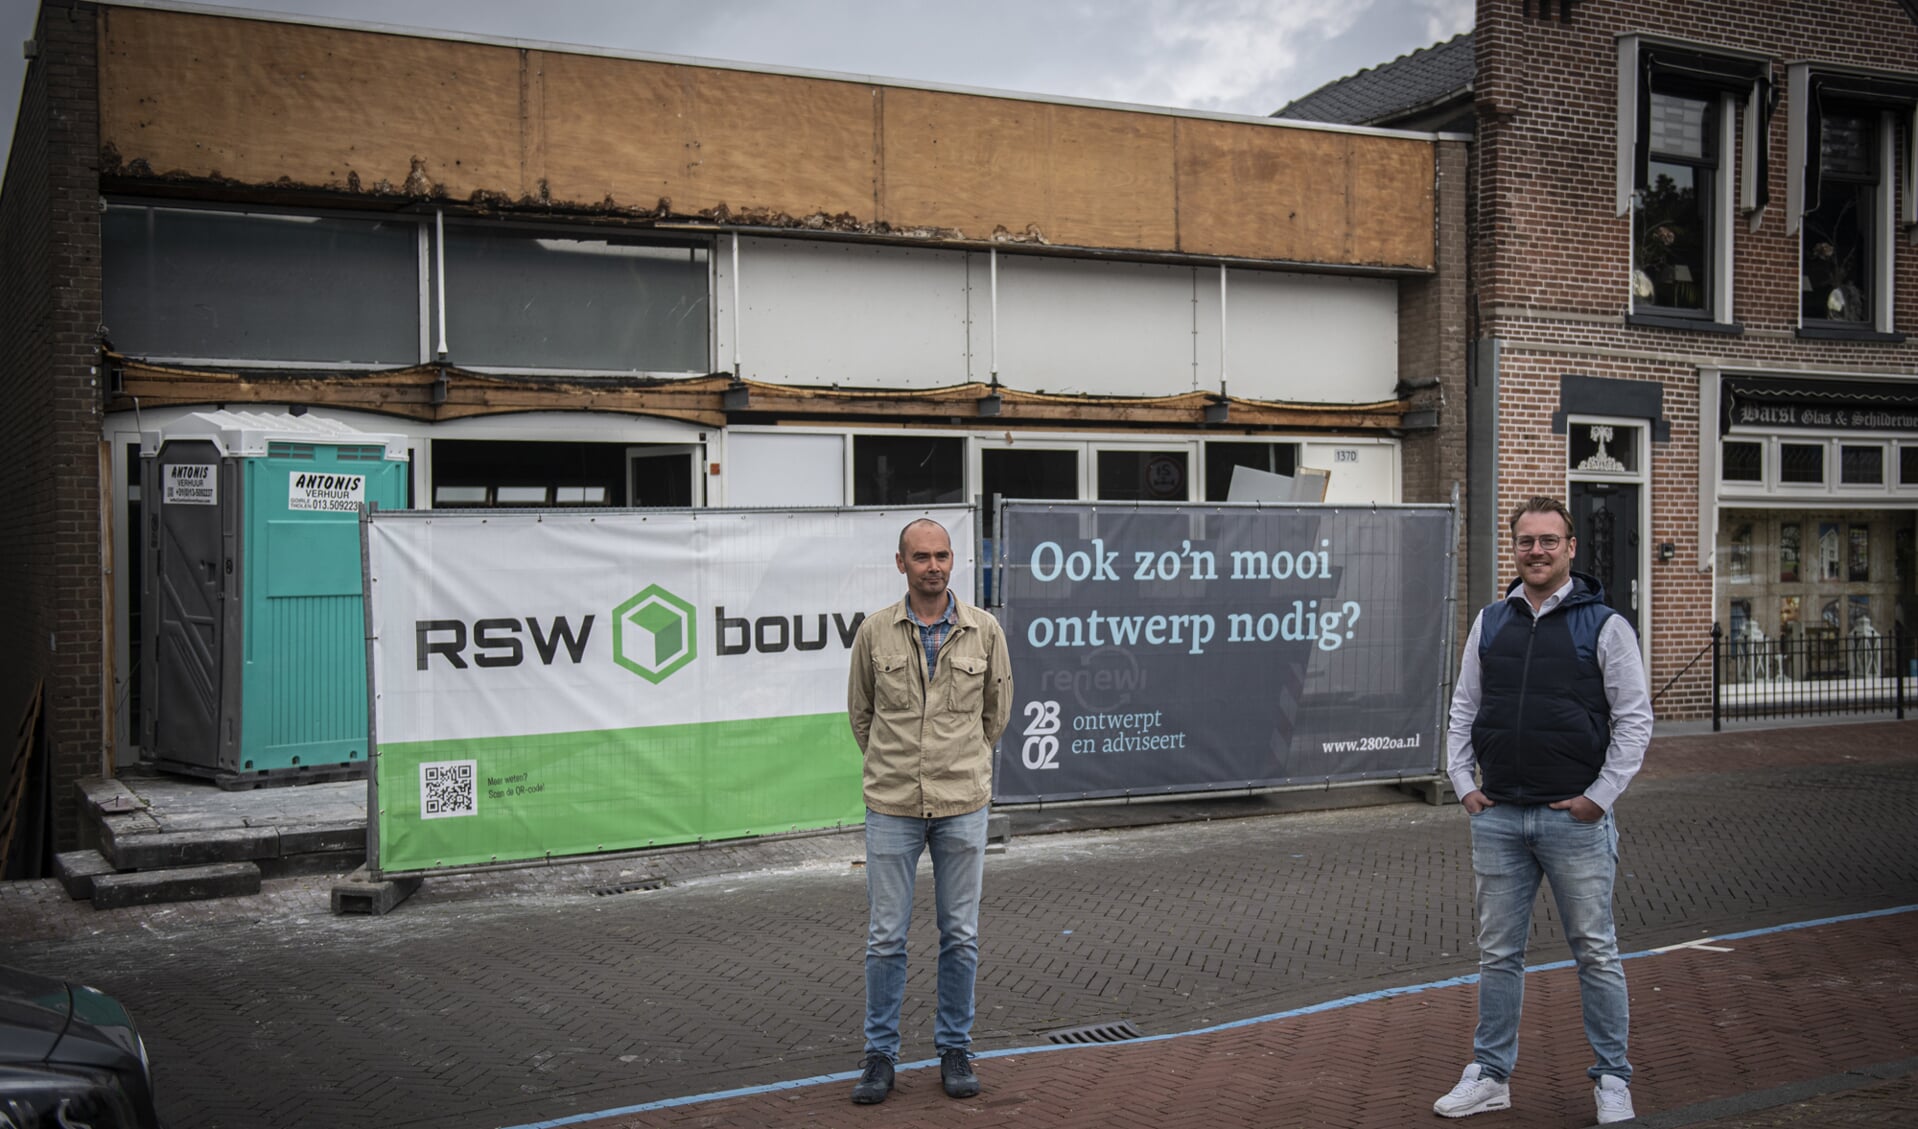 Sjoerd Roza en RSW bouw sloegen de handen ineen om van het gebouw aan de Peulenstraat iets moois te maken.